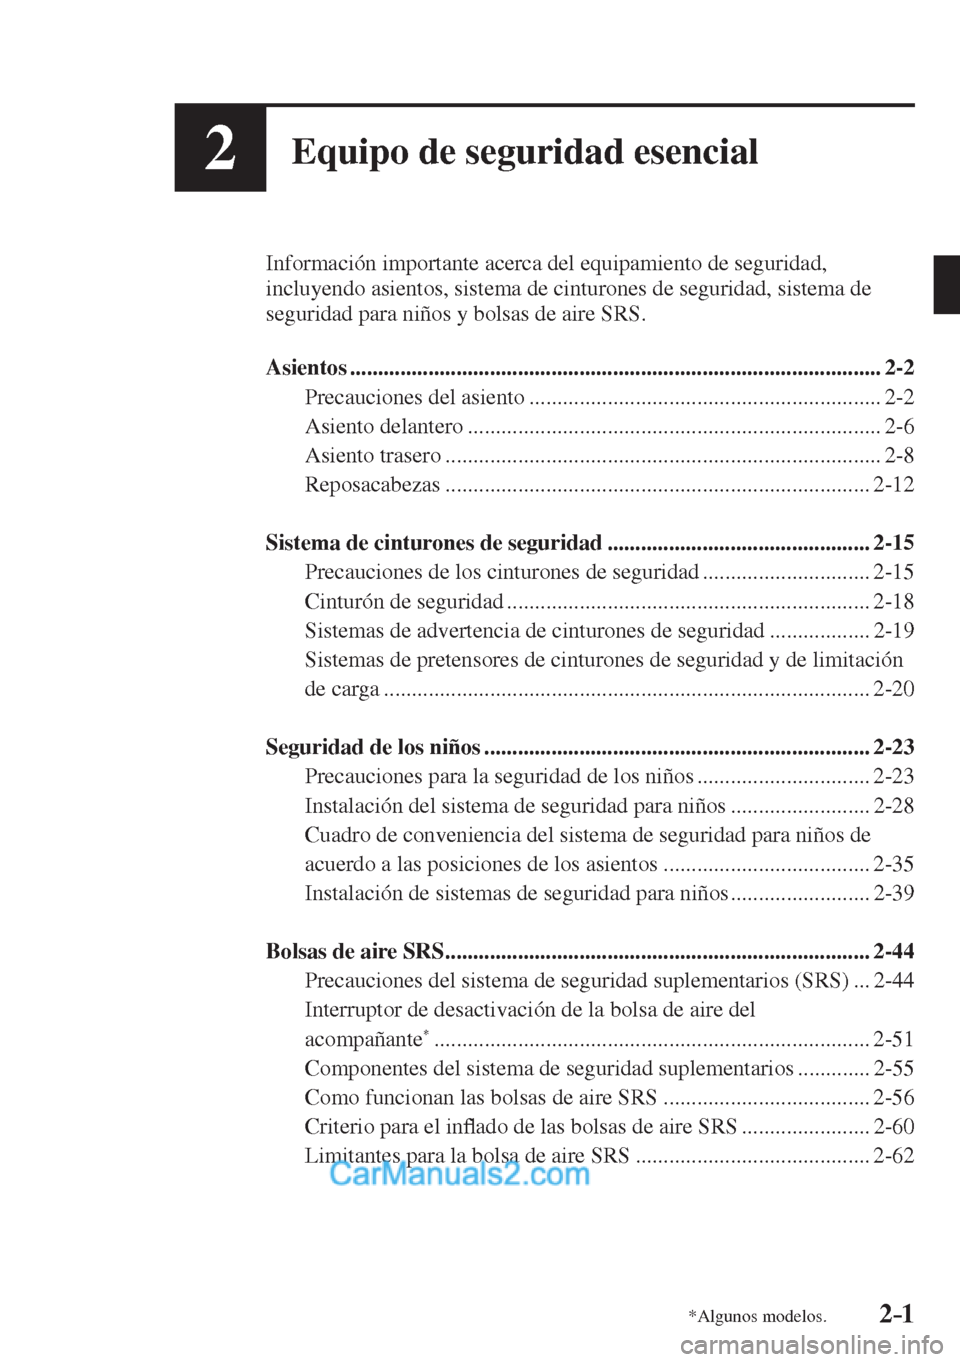 MAZDA MODEL 2 2017  Manual del propietario (in Spanish) 2–1*Algunos modelos.
2Equipo de seguridad esencial
  Información importante acerca del equipamiento de seguridad, 
incluyendo asientos, sistema de cinturones de seguridad, sistema de 
seguridad par